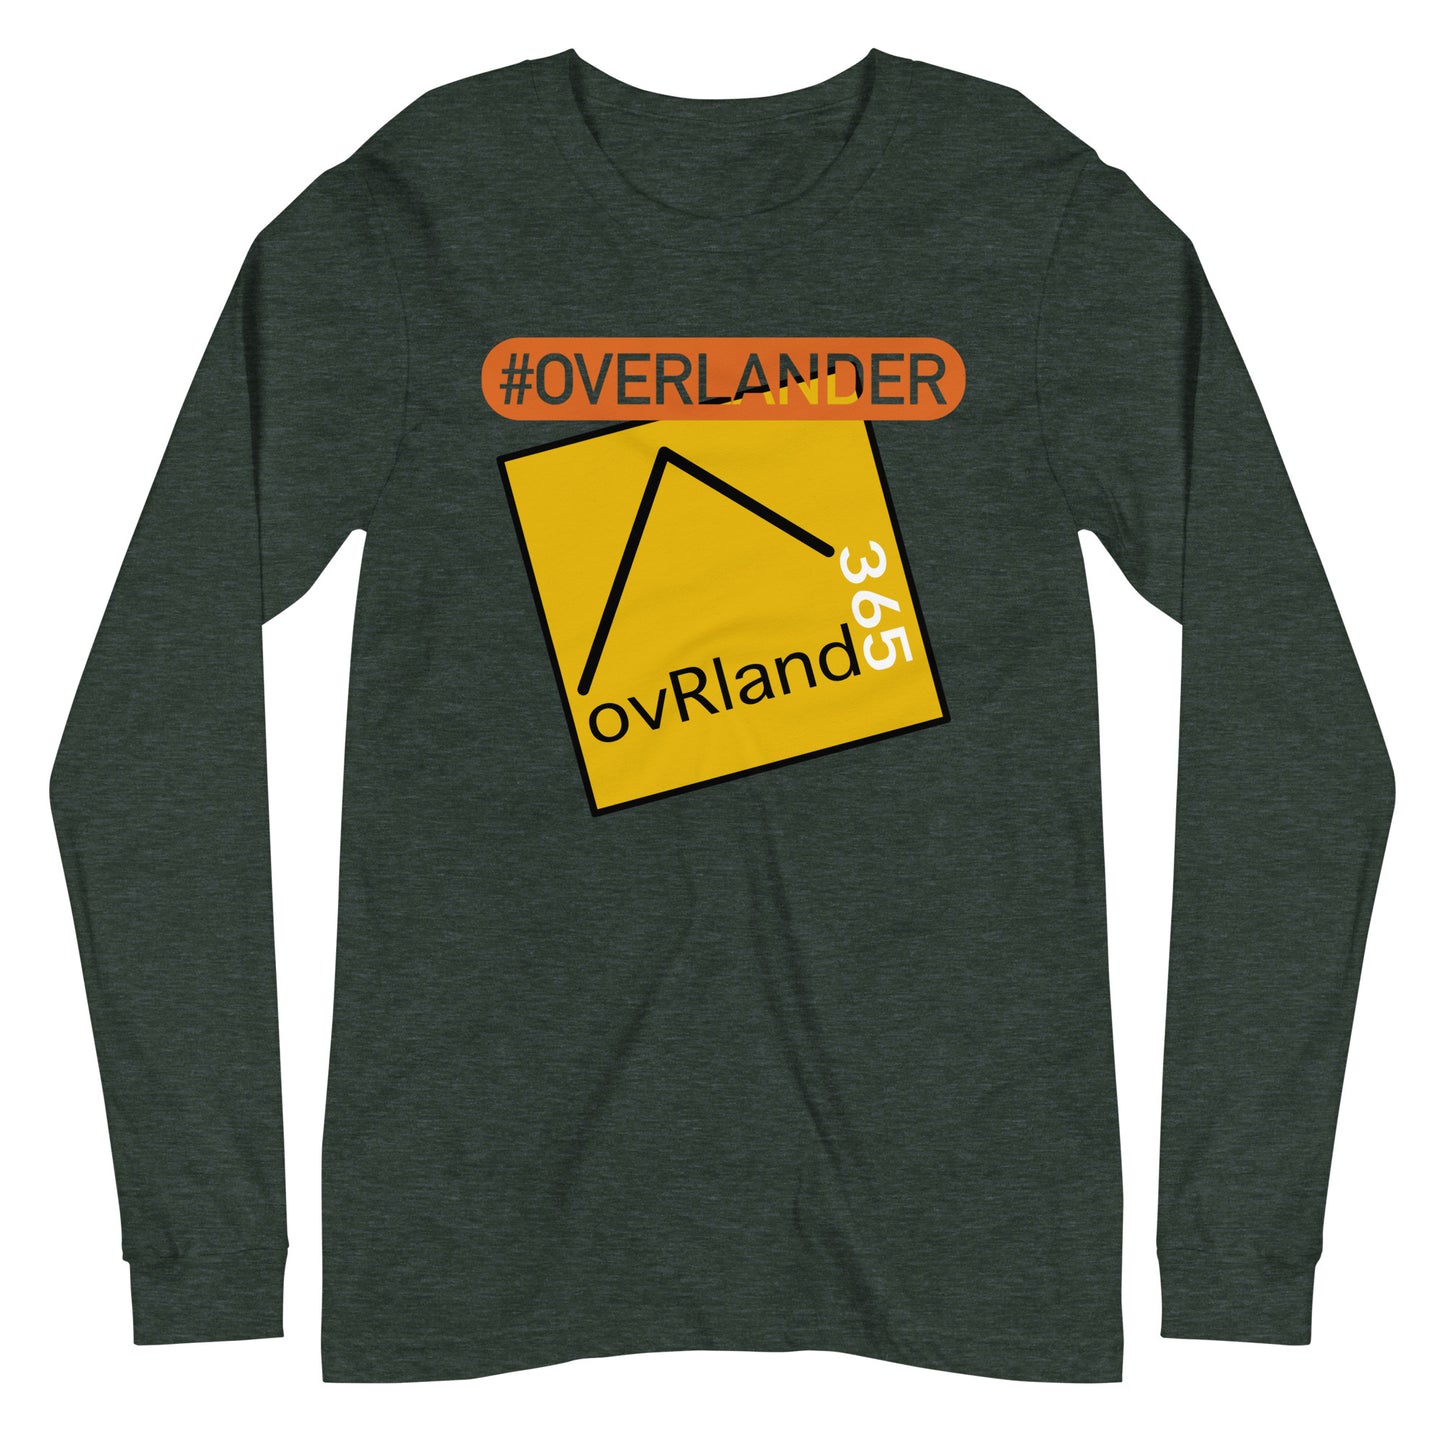 #overlander overlanding long-sleeve, forest. overland365.com